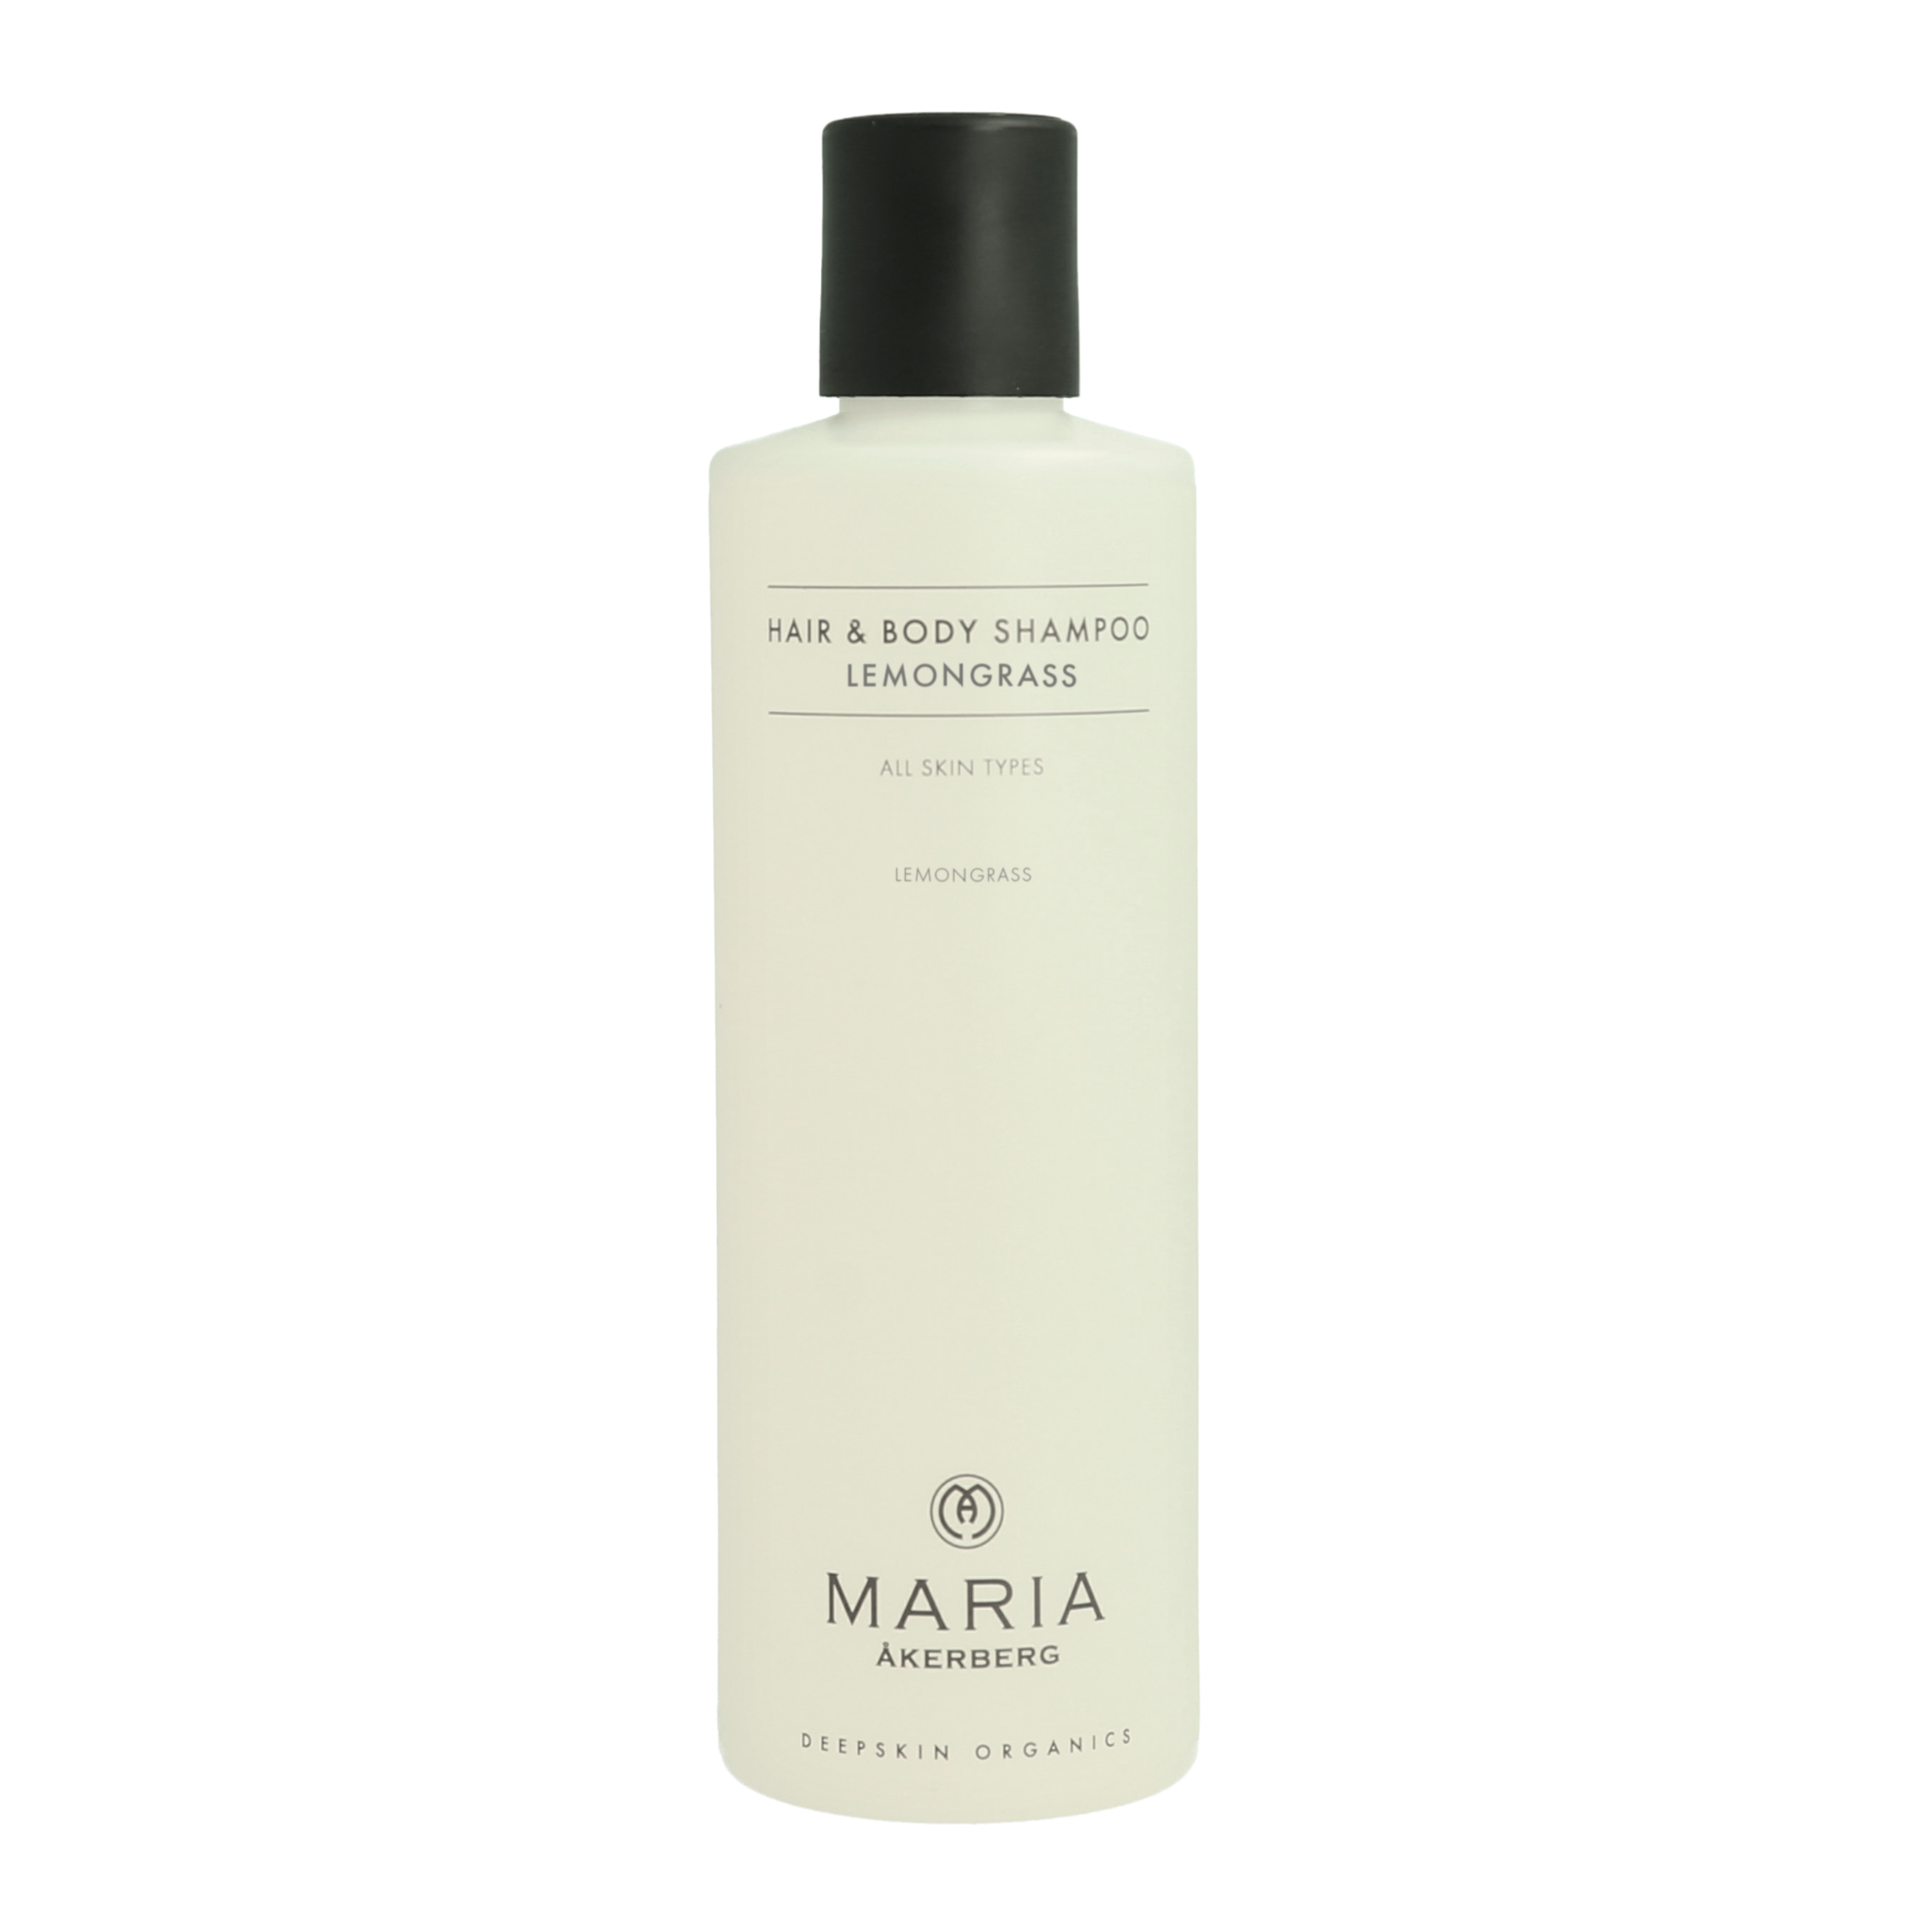 Hair & Body Shampoo Lemongrass 250ml